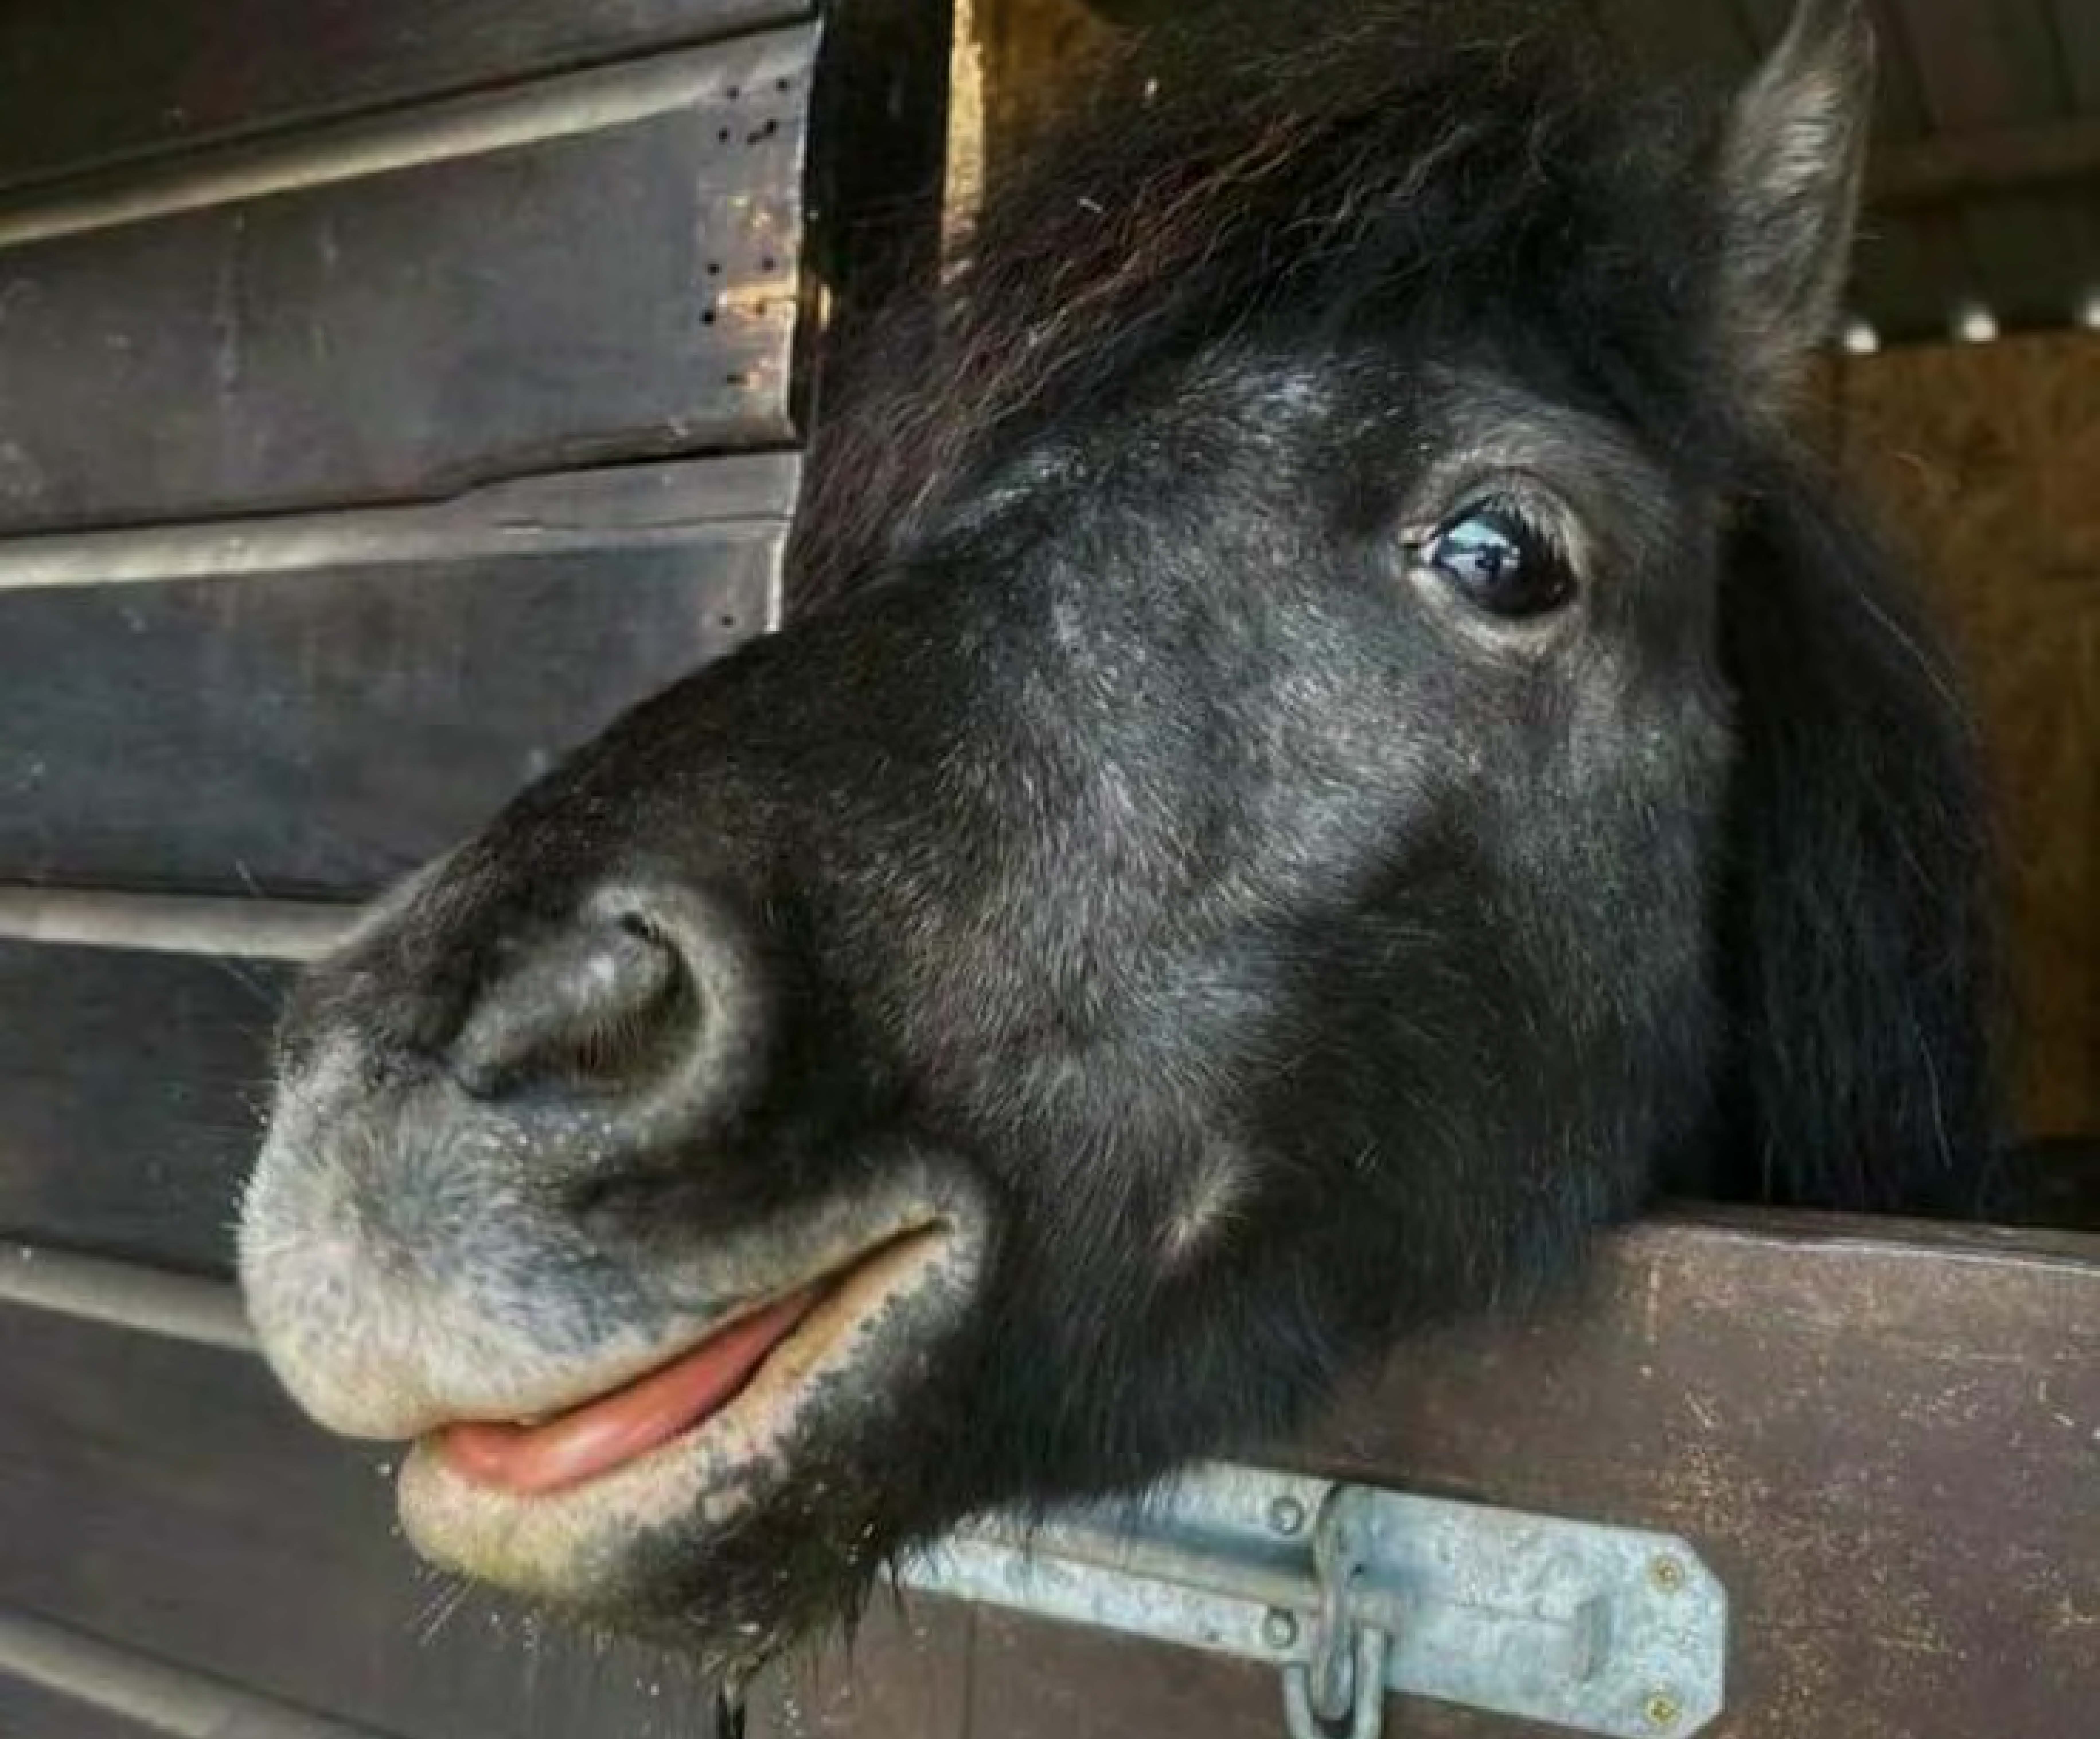 A close up of a black pony